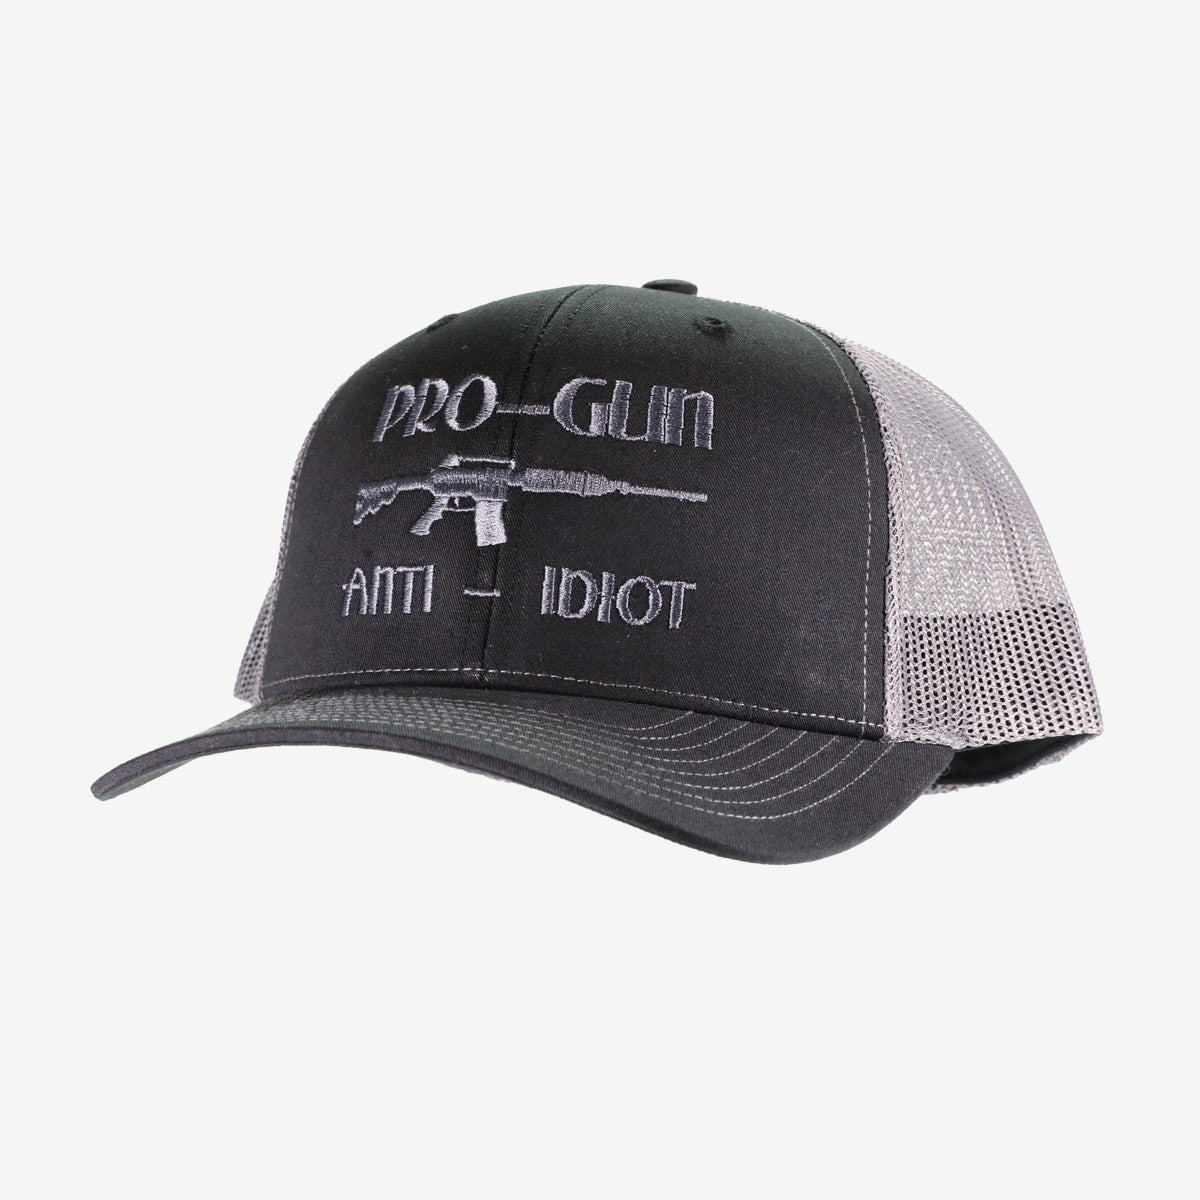 Pro Gun Anti Idiot Trucker Hat